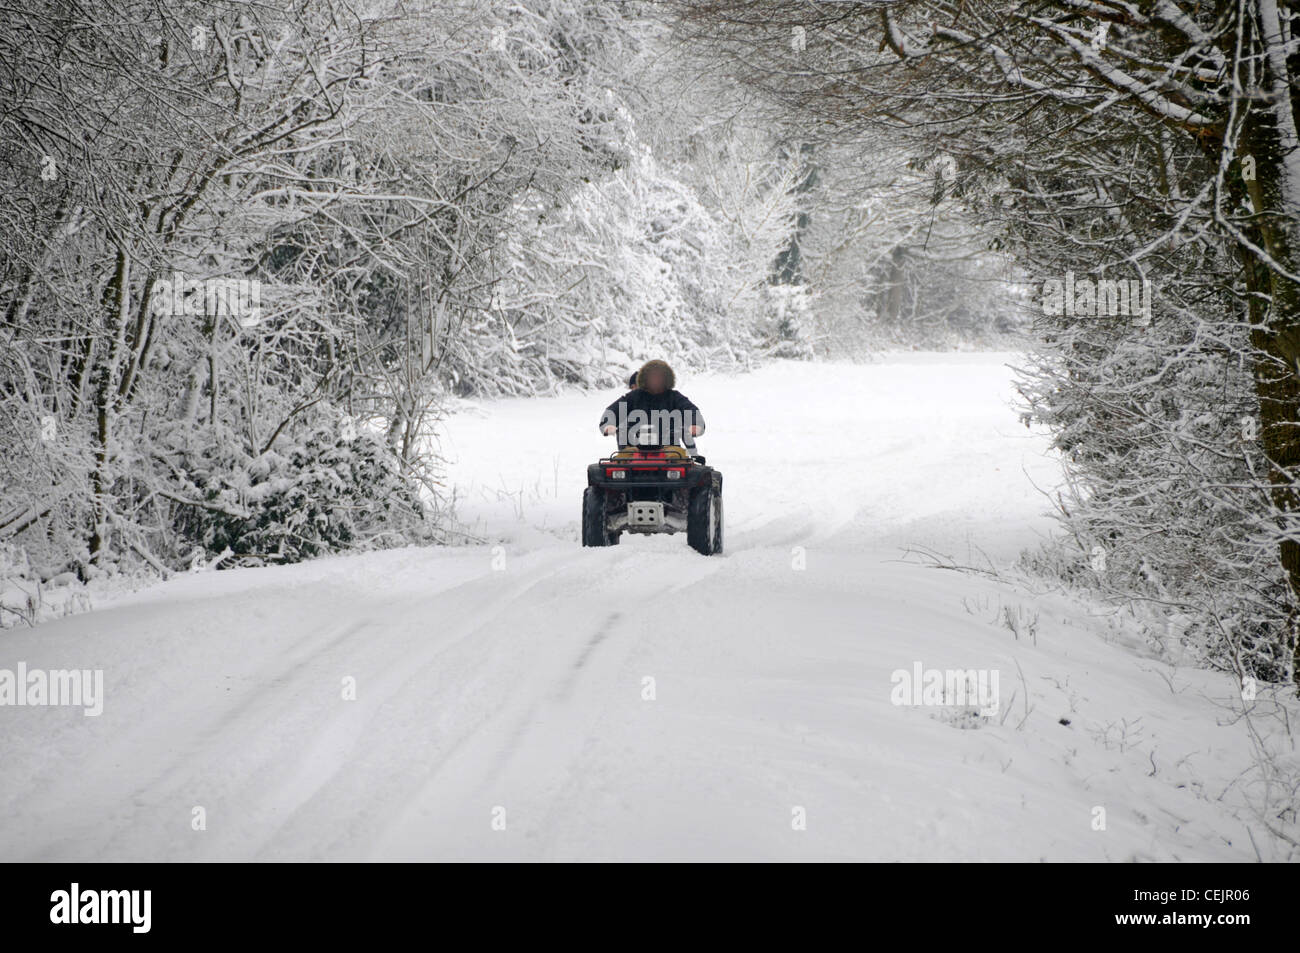 Neige scène pilote quad & leurs conduite passager on country road lane sous les arbres couverts de neige en hiver wonderland Brentwood Essex England UK Banque D'Images